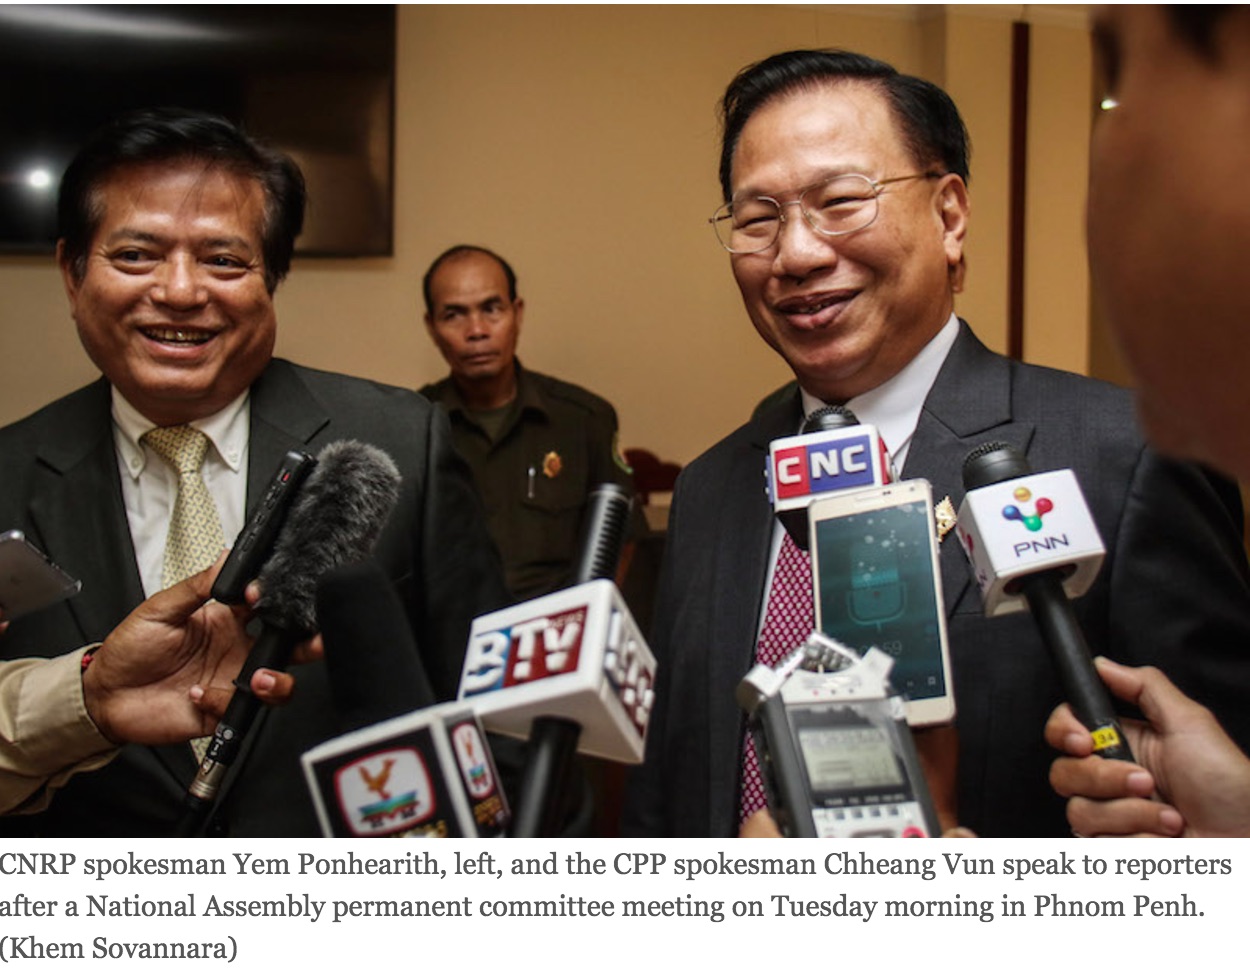 Les députés de l'opposition étaient absents des sessions parlementaires depui mai dernier pour lutter contre la procédure judiciaire à l'encontre de Kem Sokha, figure phare de l'opposition au gouvernement. Copie d'écran du Cambodia Daily, le 5 octobre 2016.